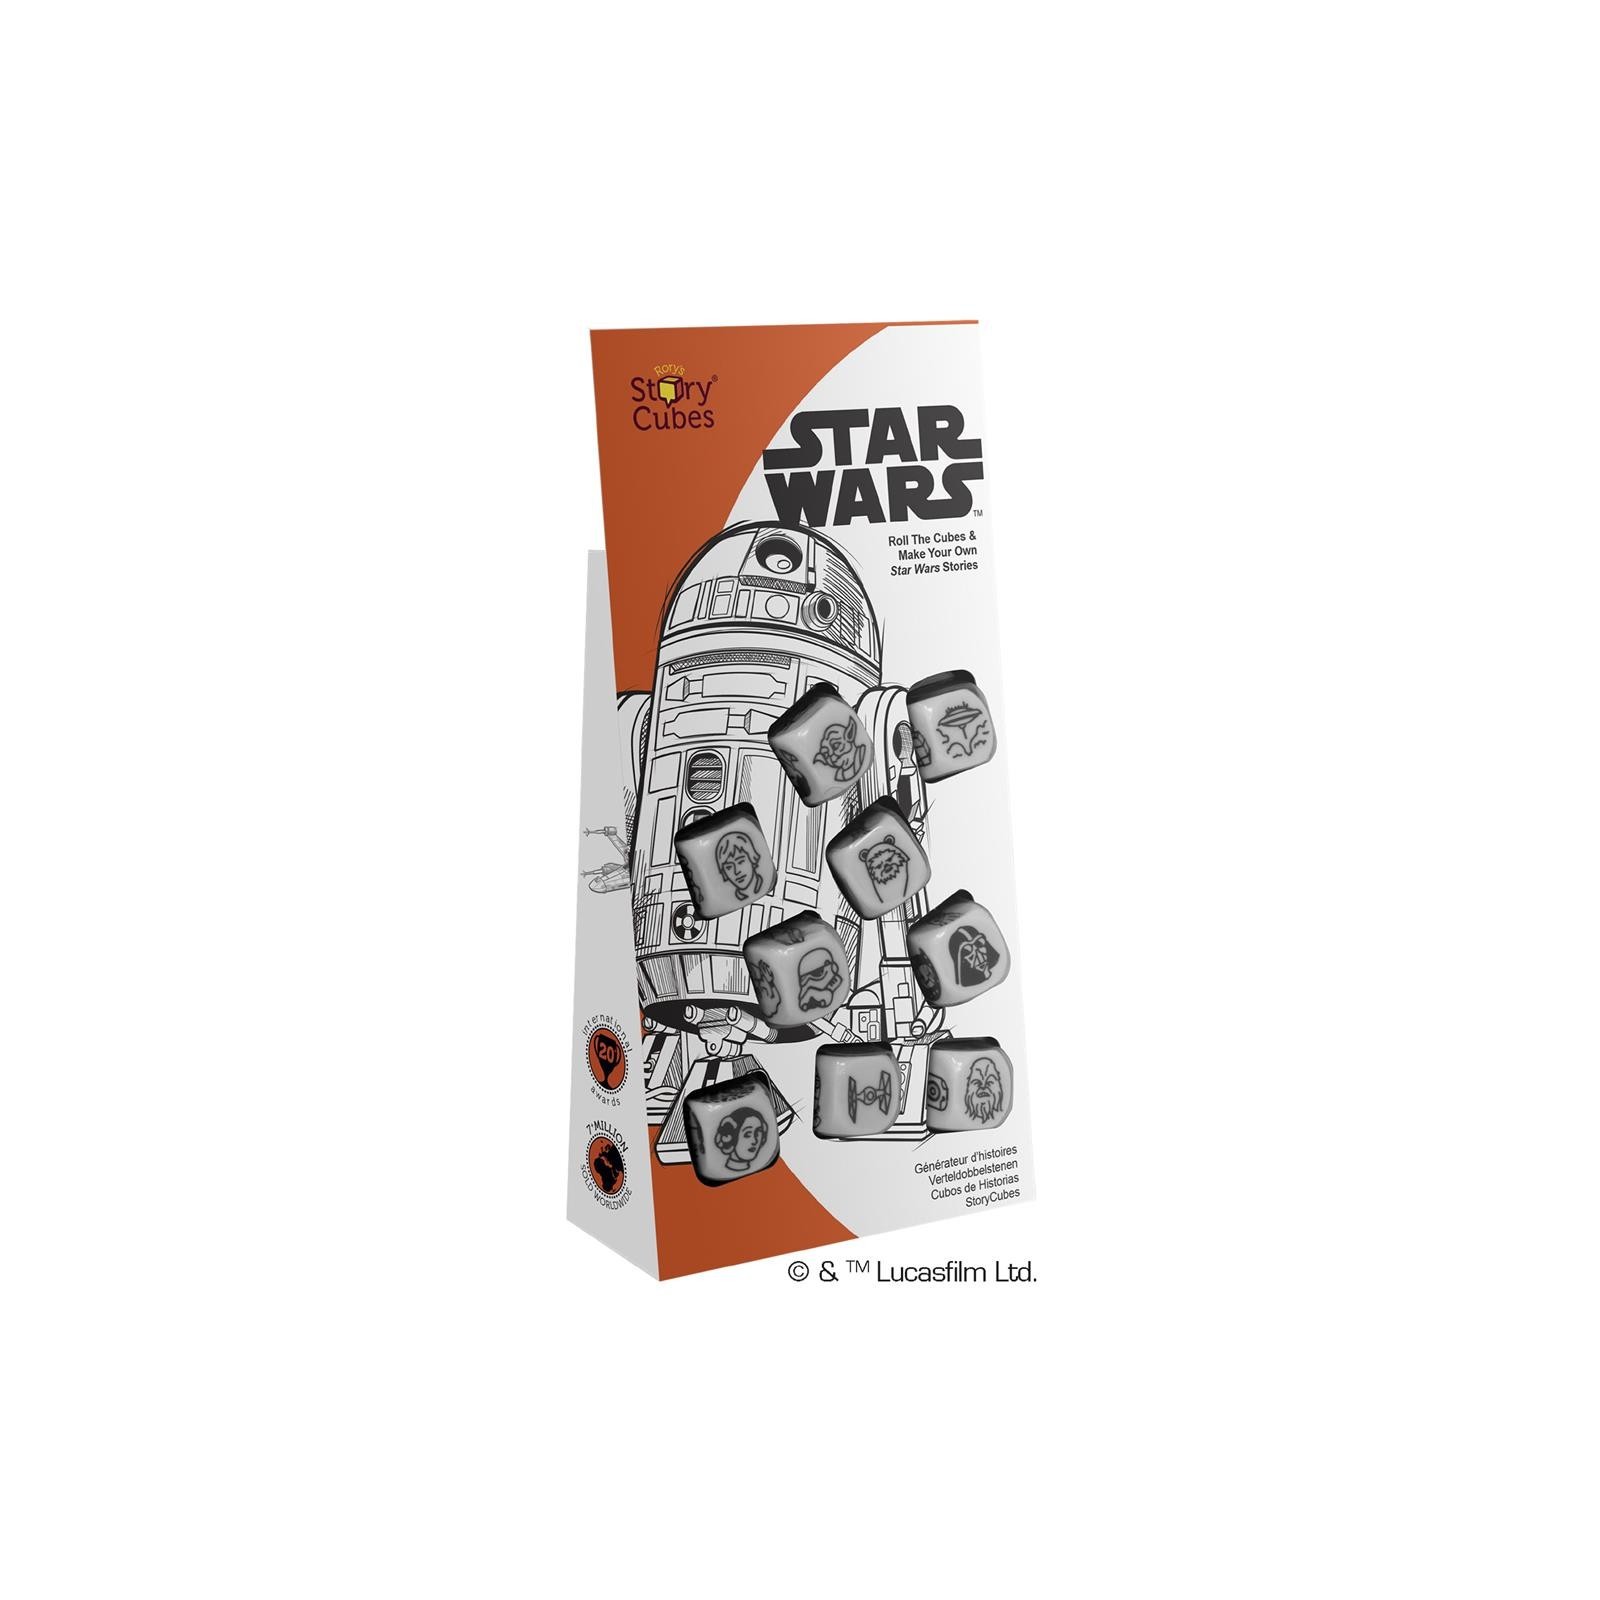 Juego mesa story cubes star wars